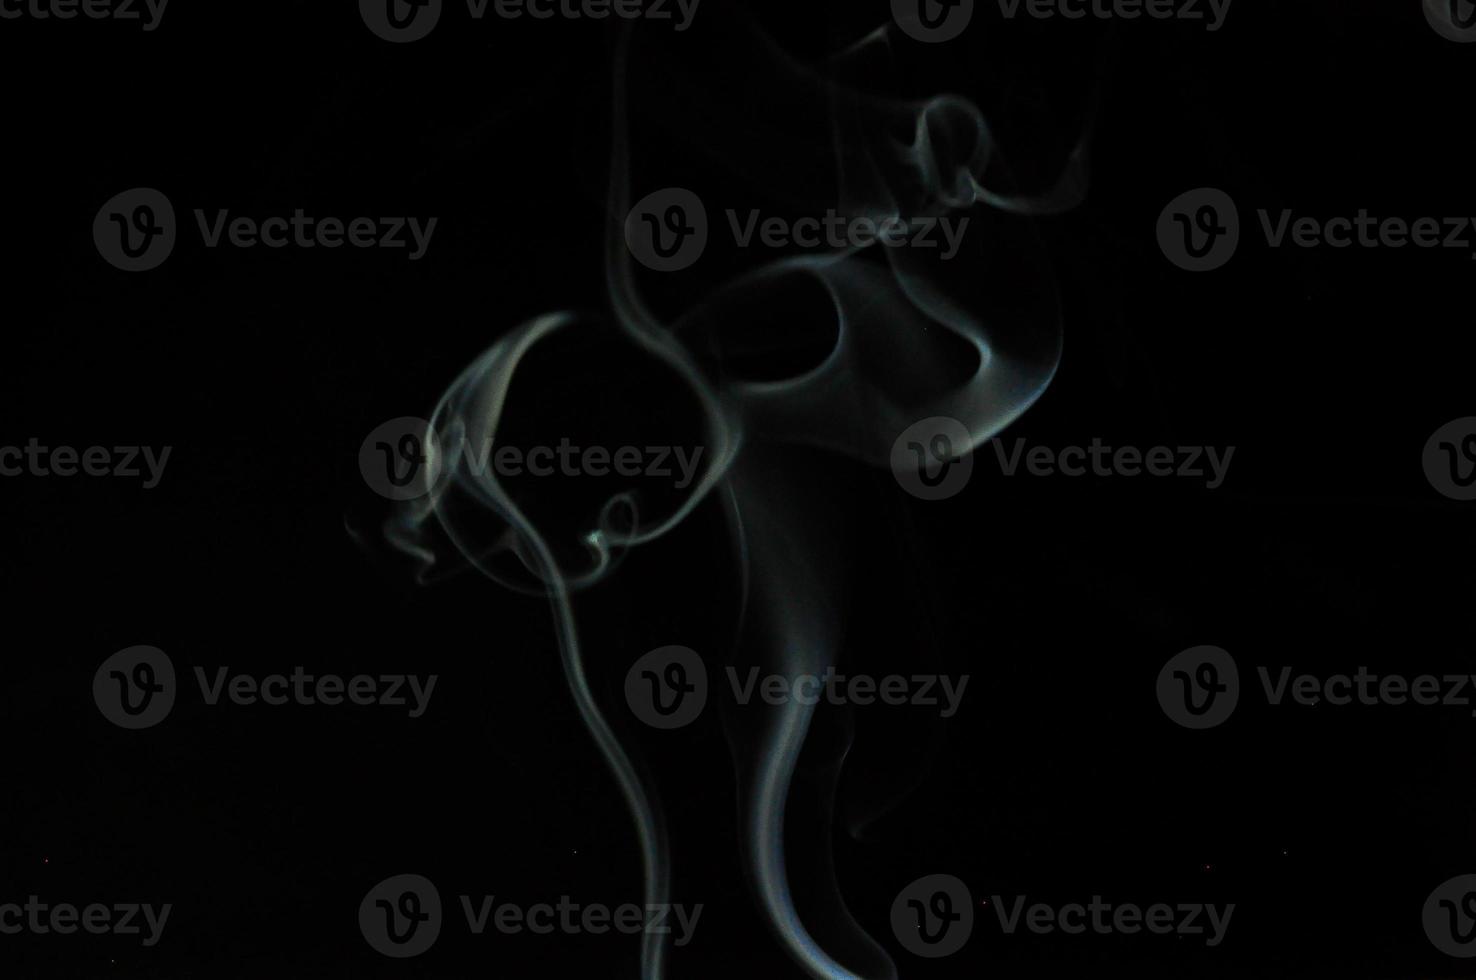 witte rook op een zwarte achtergrond foto